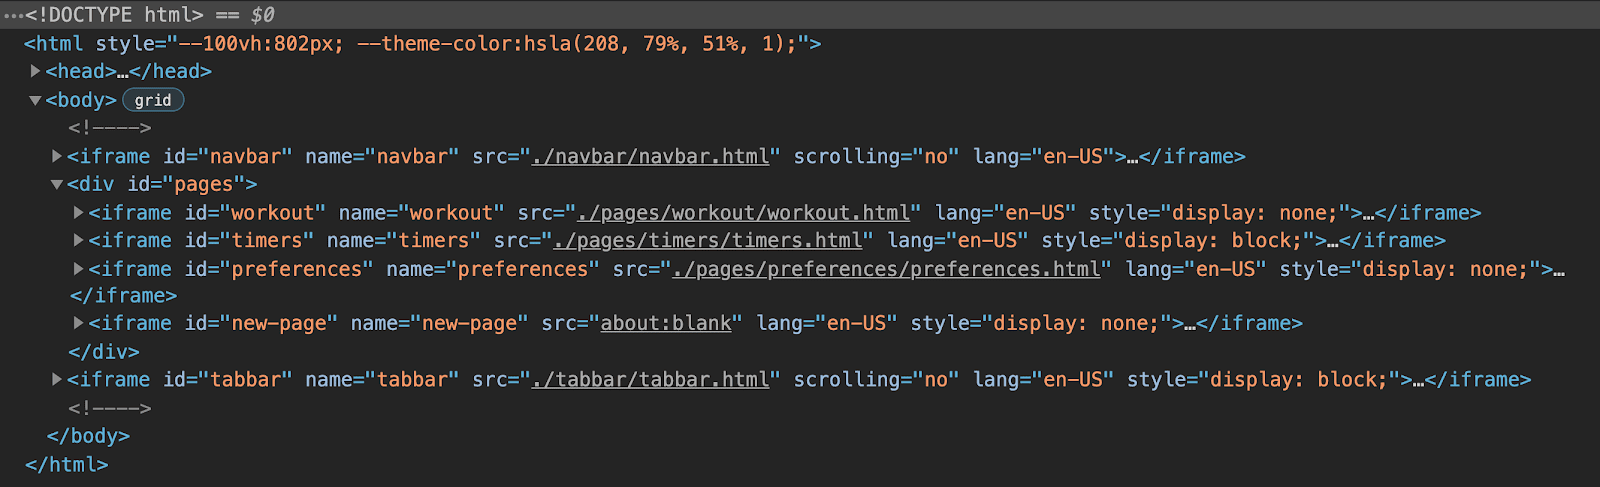 תצוגת כלי הפיתוח ל-Chrome של מבנה ה-HTML של האפליקציה מראה שהיא כוללת שישה מסגרות iframe: אחת לסרגל הניווט, אחת לשורת הכרטיסיות ושלוש מקובצות עבור כל דף באפליקציה, עם iframe סופי עבור דפים דינמיים.